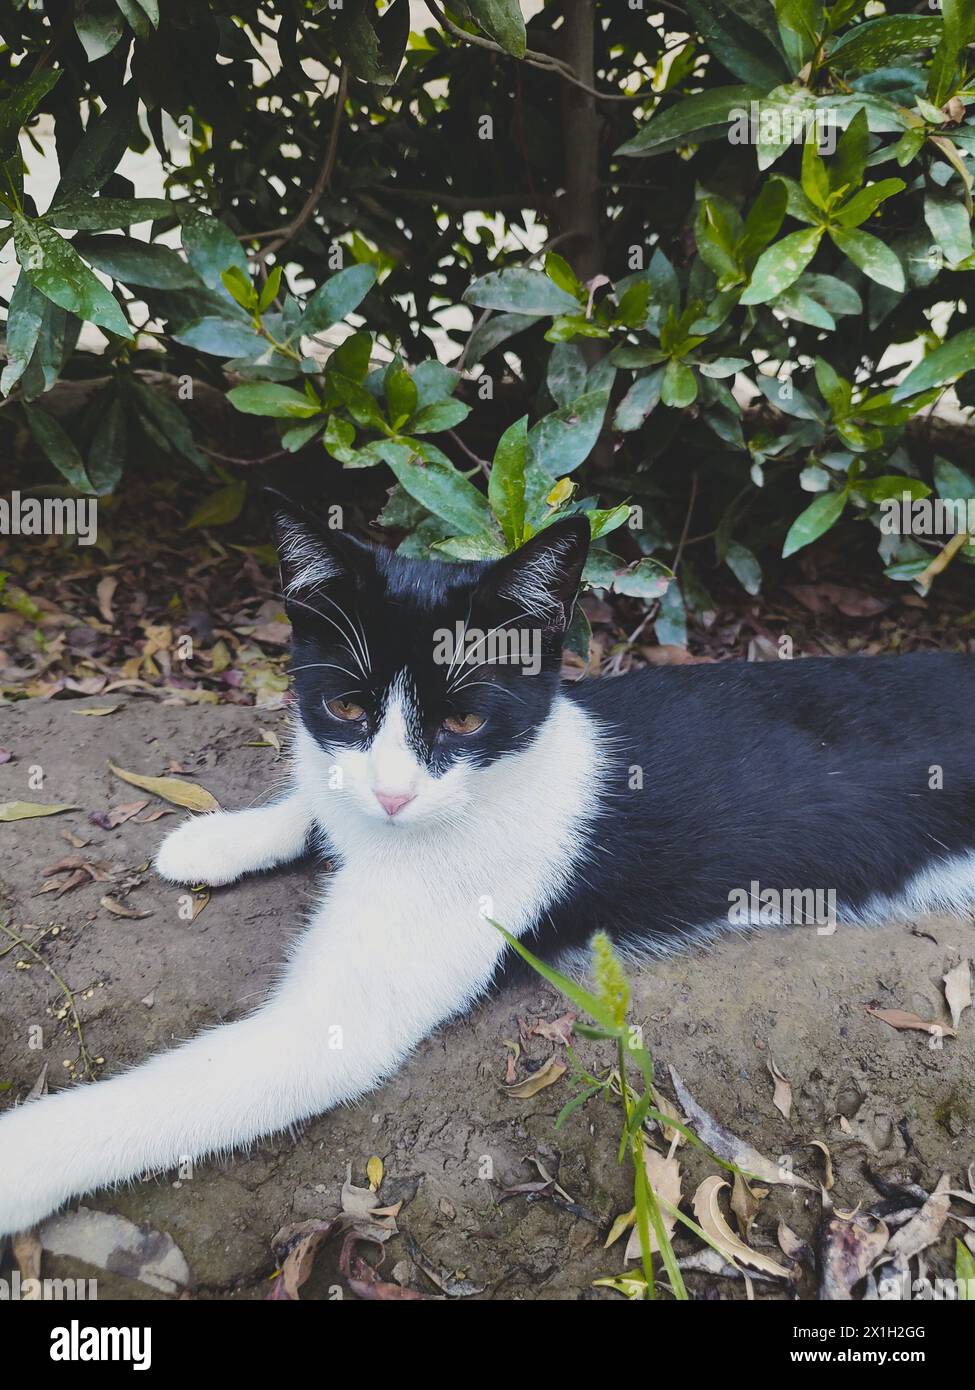 ritratto di un gatto con gli occhi, gatto sull'erba, fotografia di gattini carini, fotografia di vita selvaggia Foto Stock